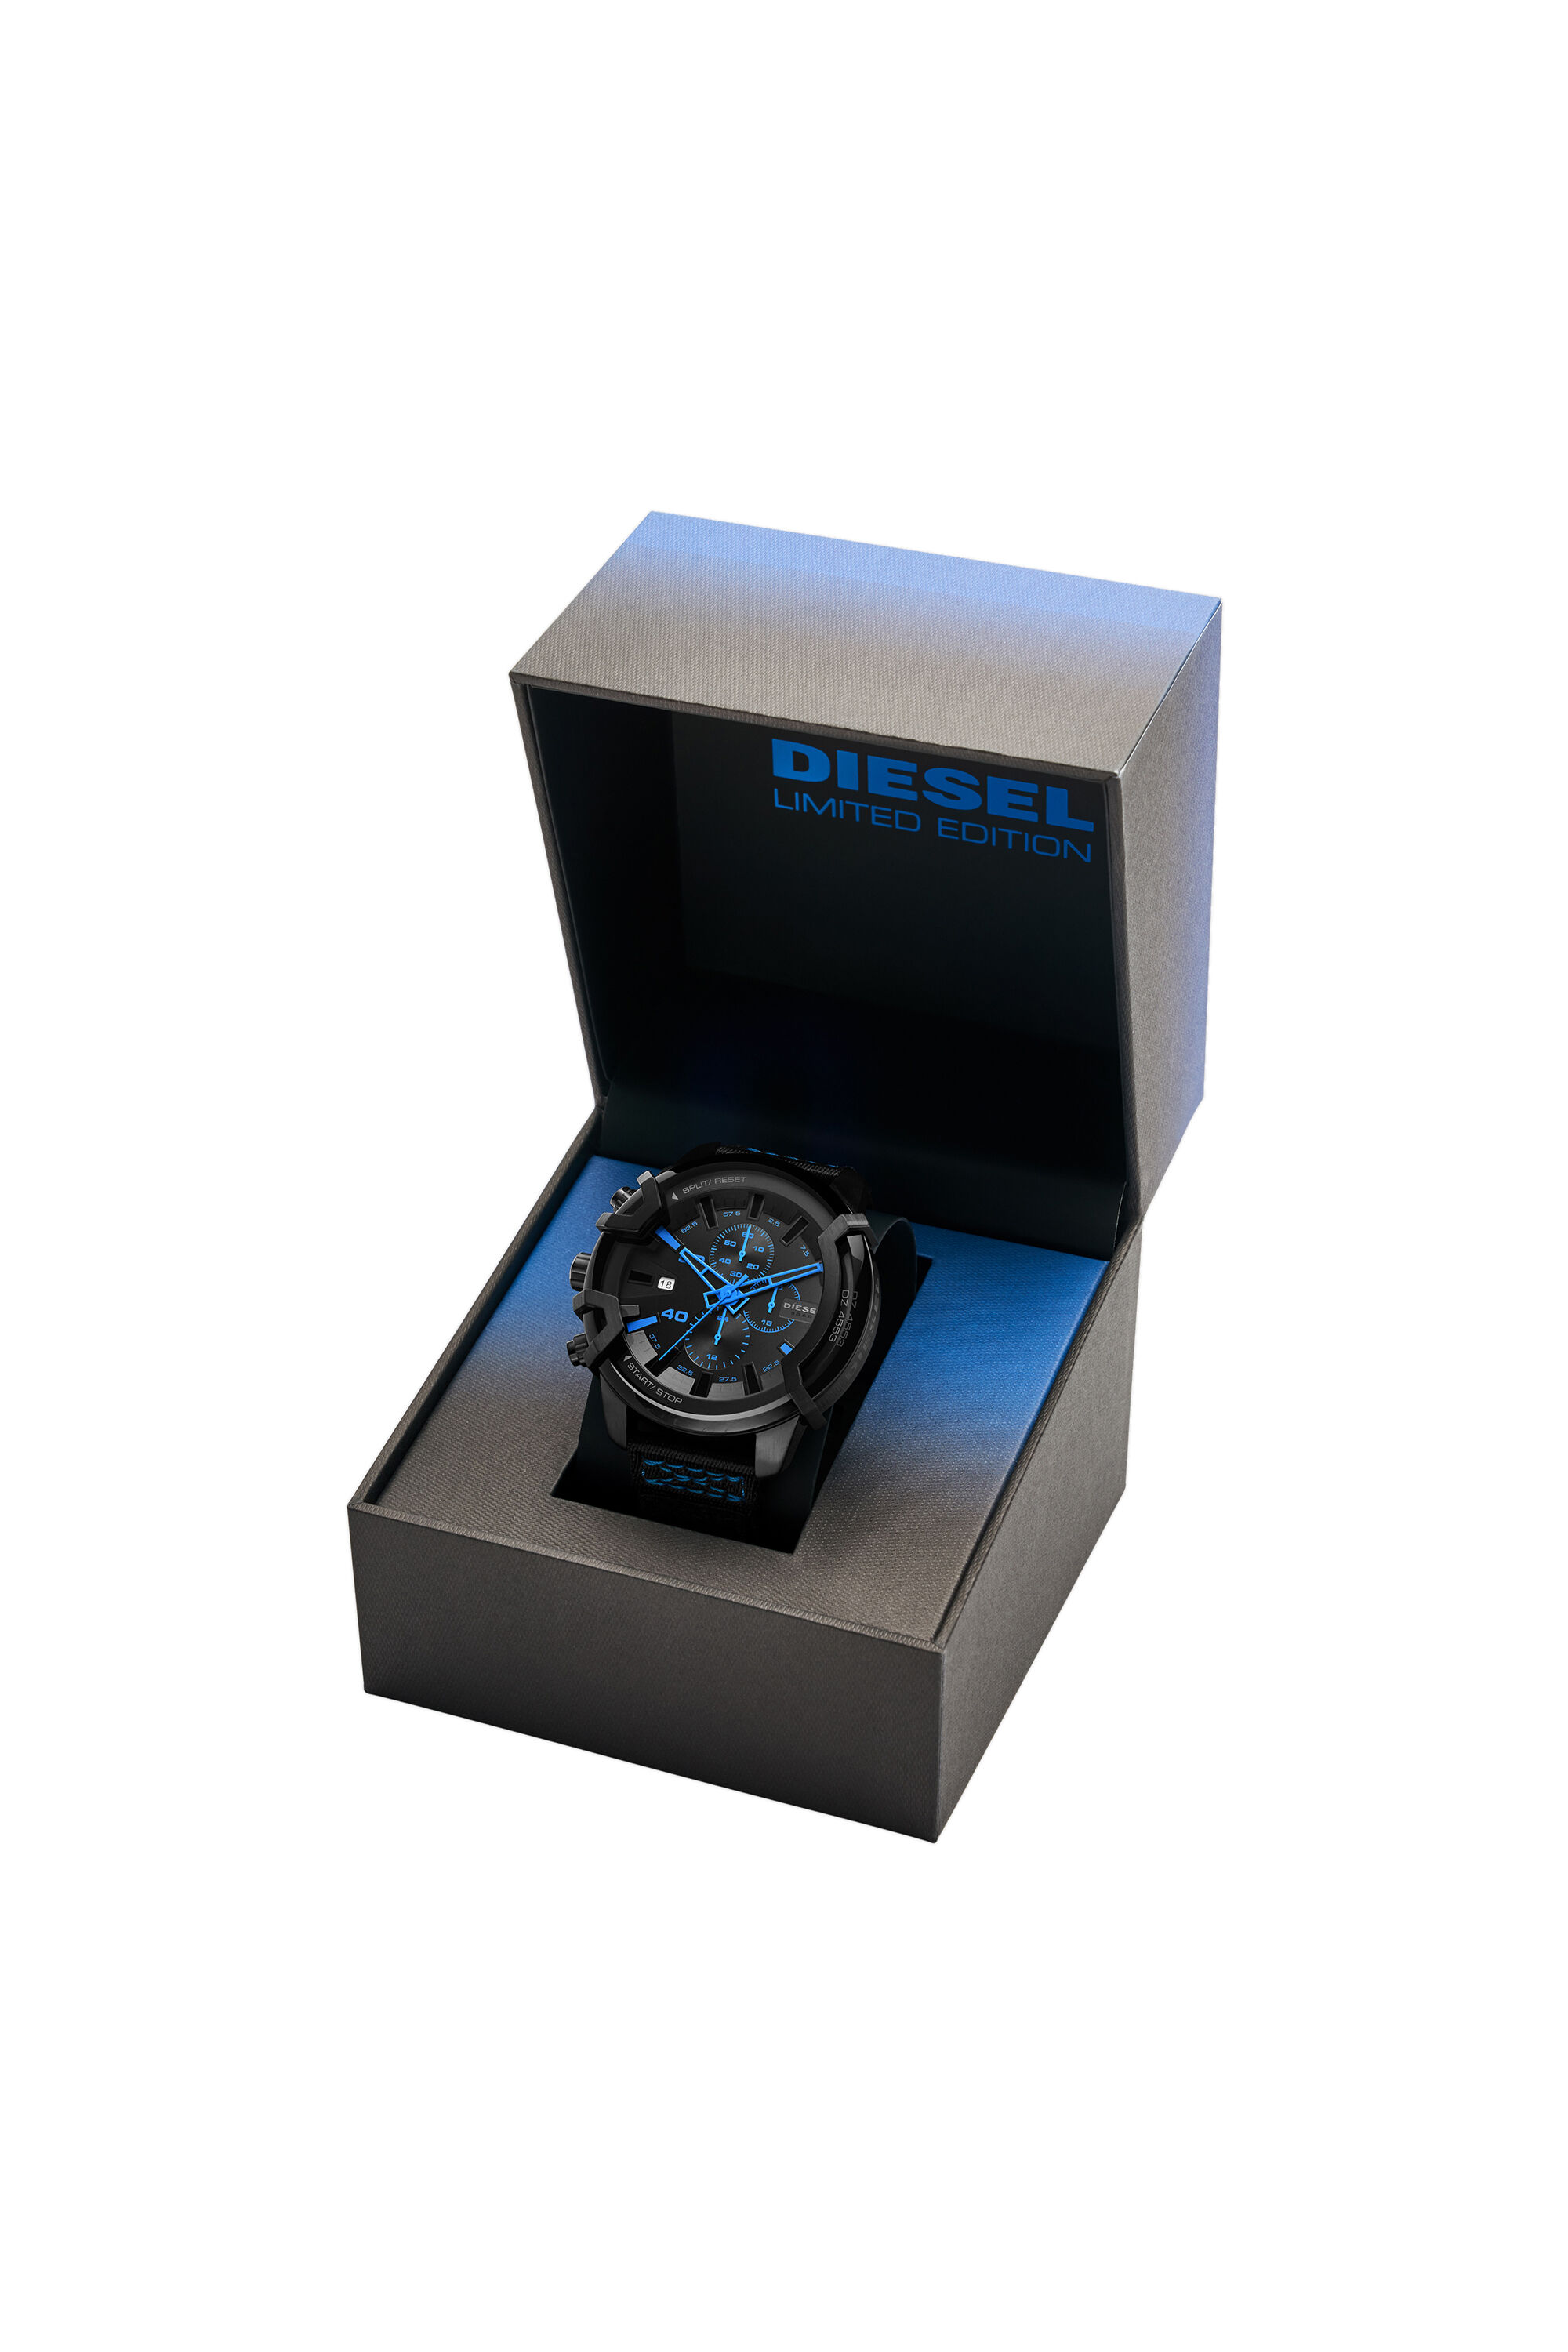 Diesel - DZ4553, Black/Blue - Image 4